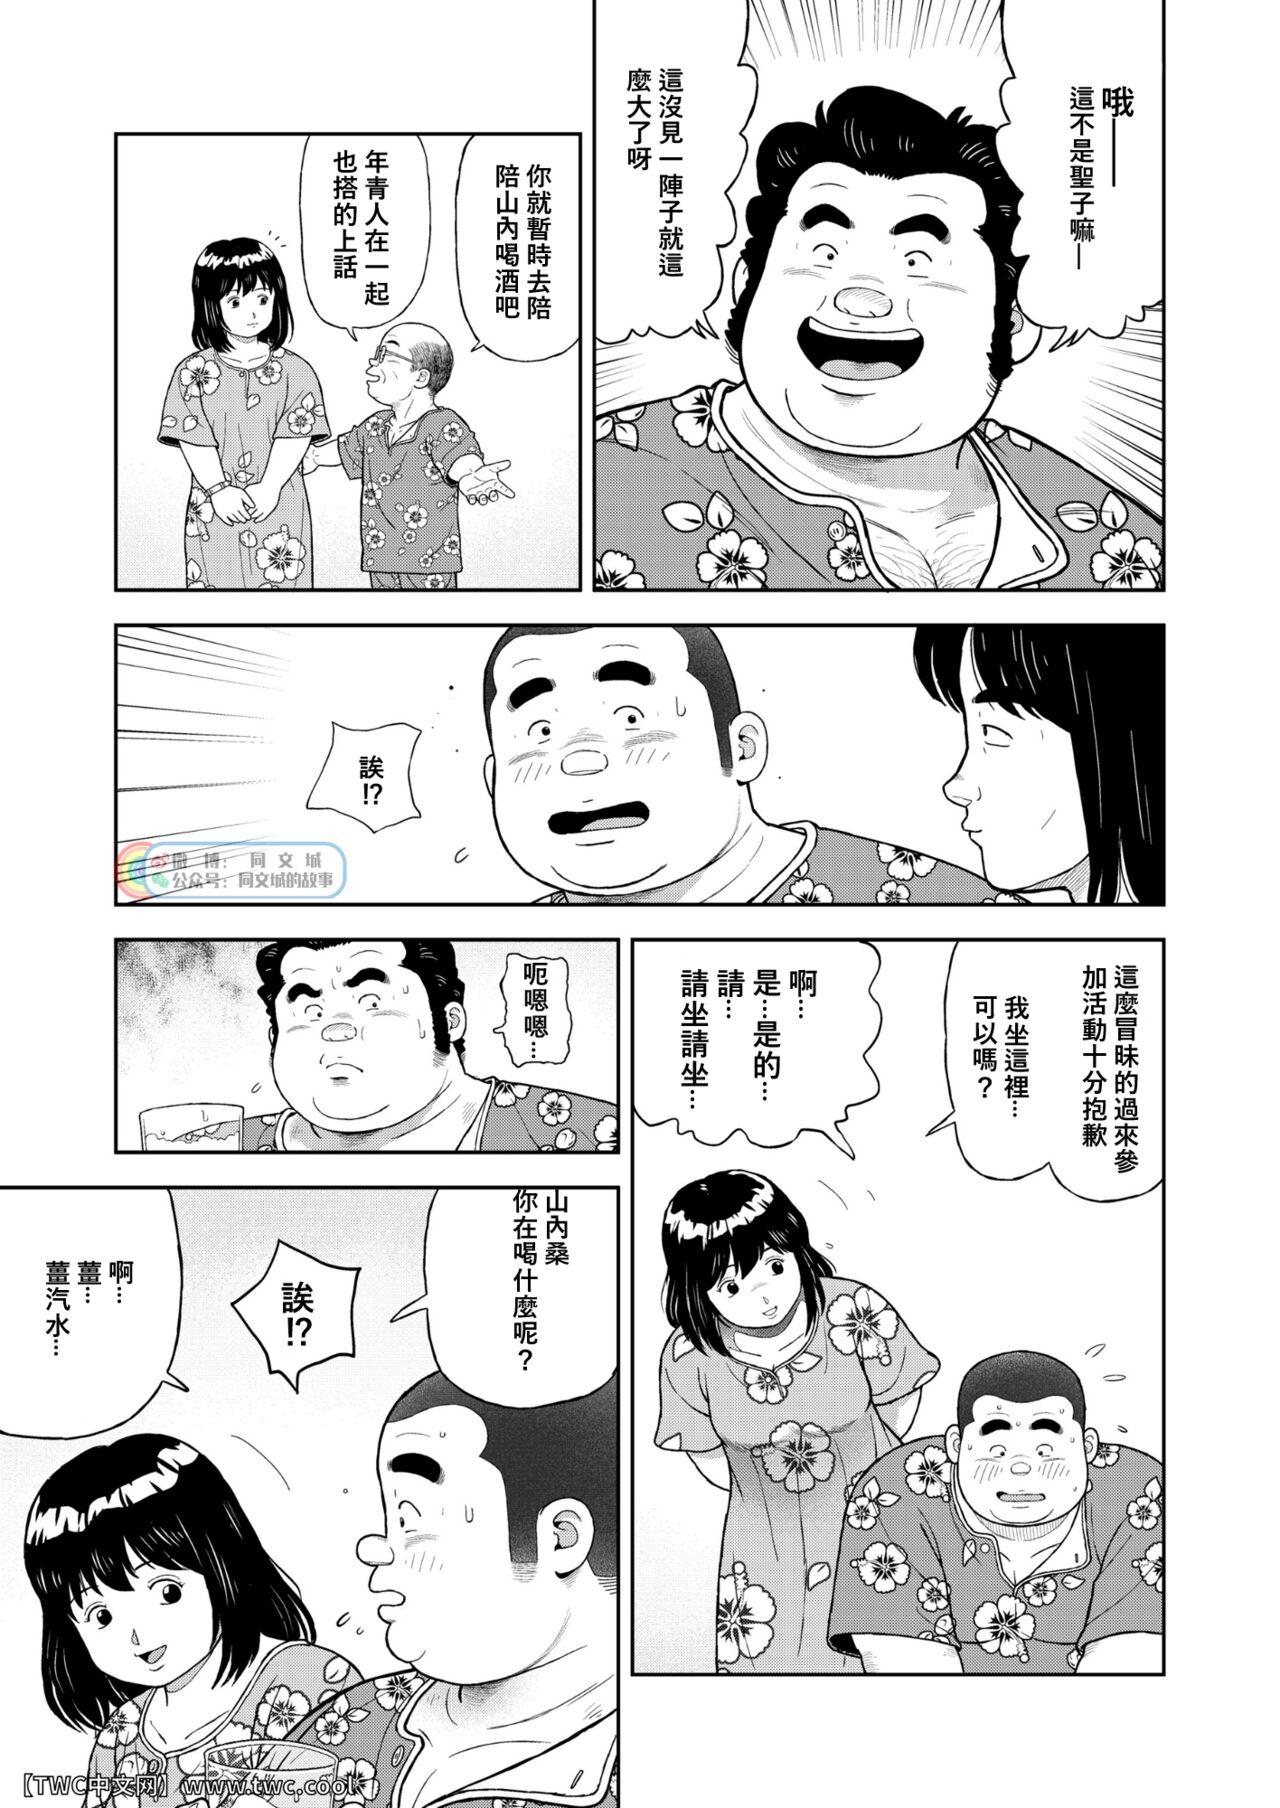 Sixtynine Kunoyu Nijyunanahatsume Anokane o Narasunohadonata - Original Peluda - Page 3